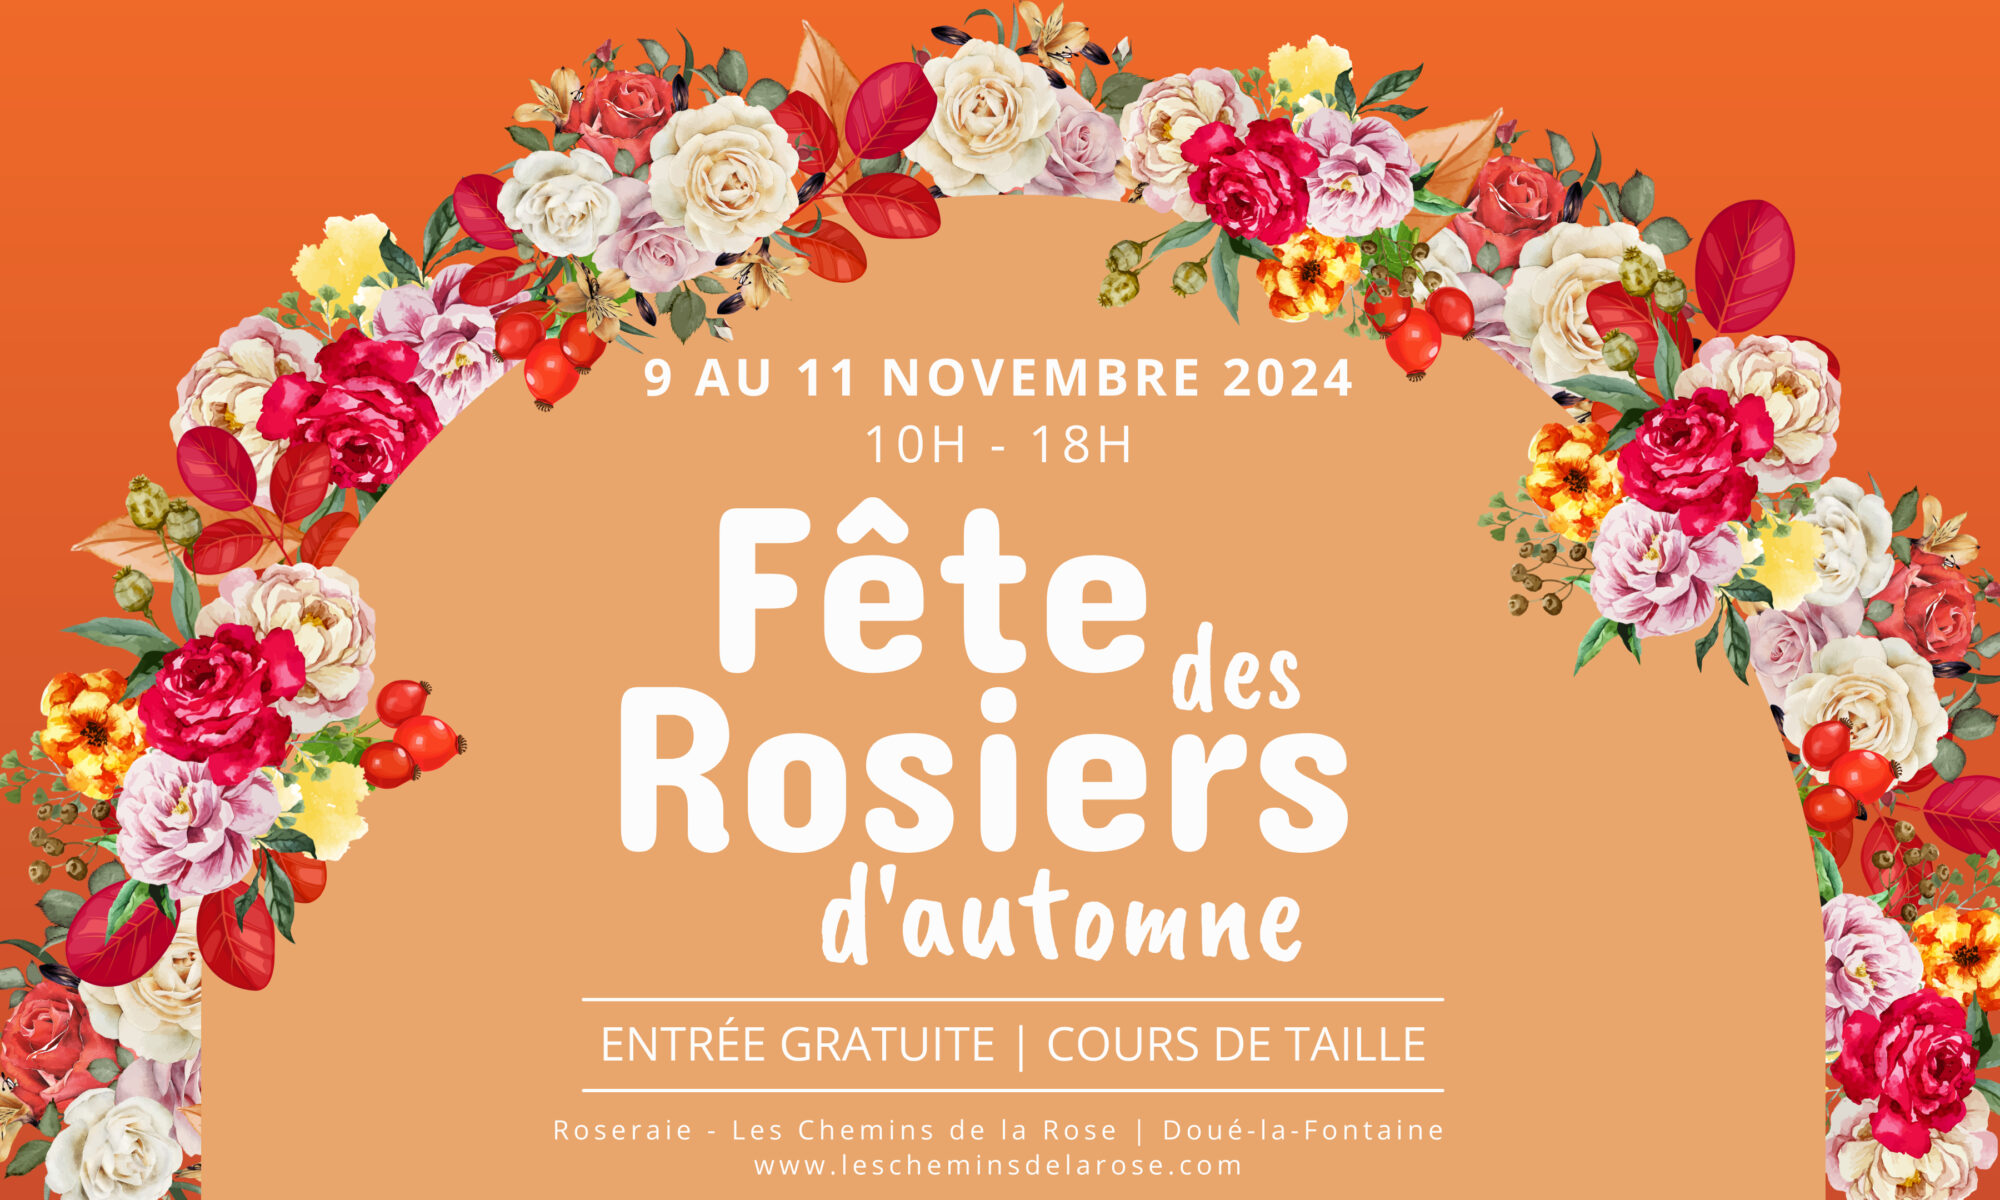 Fête des rosiers d'automne 2024 - Roseraie Les Chemins de la Rose